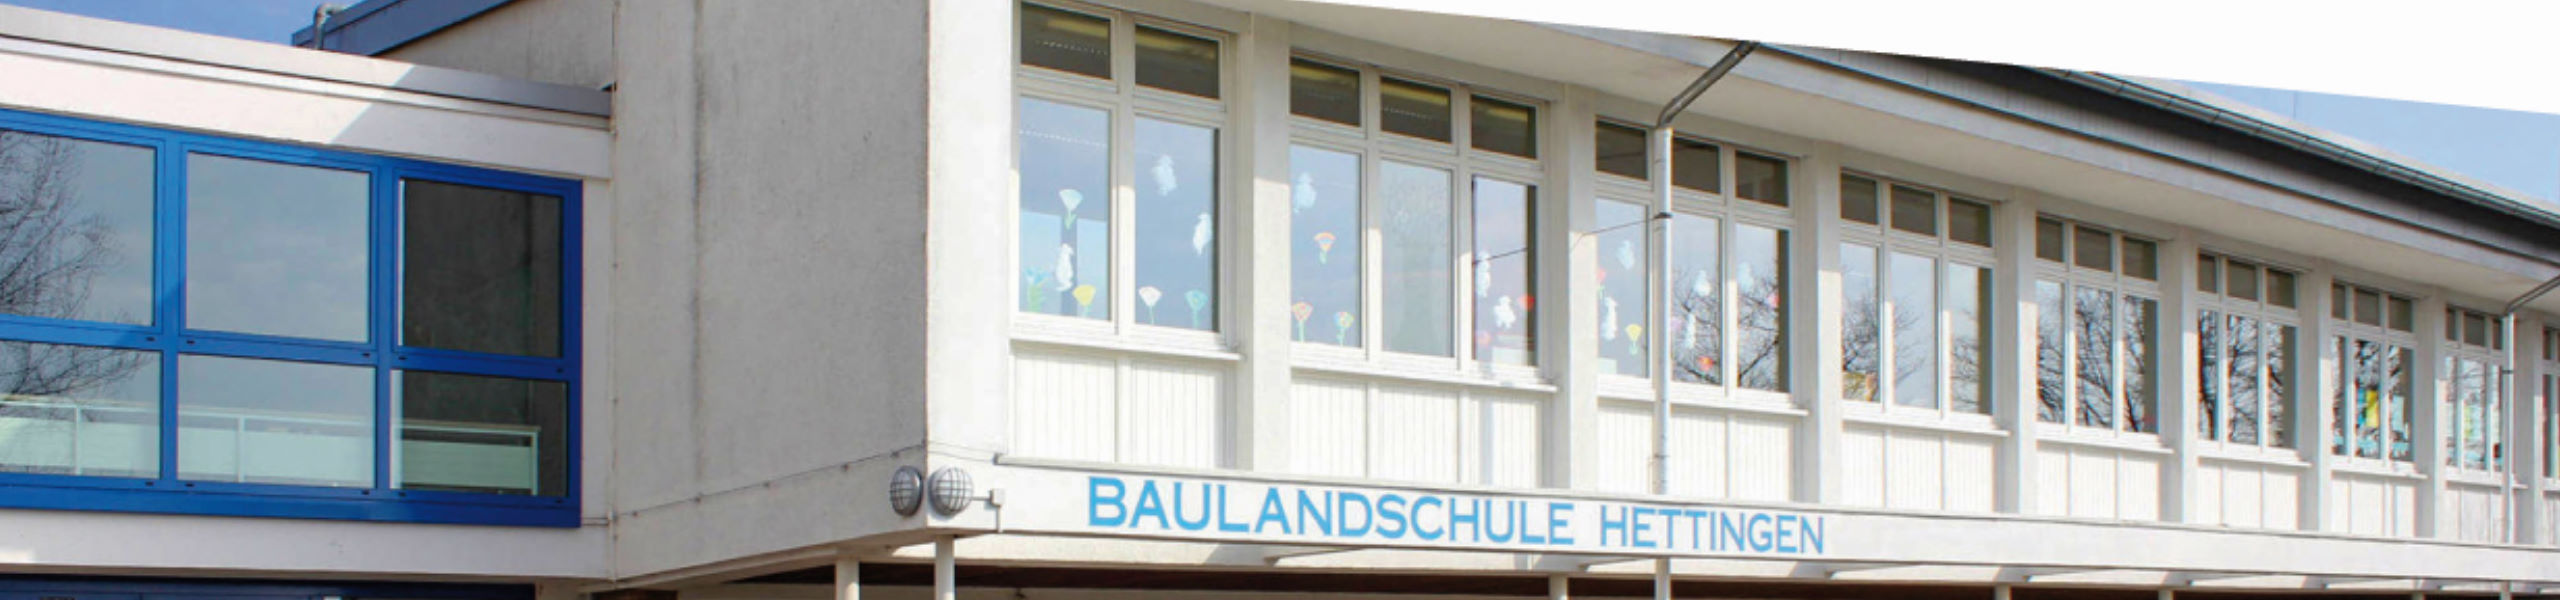 Baulandschule Hettingen - Termine